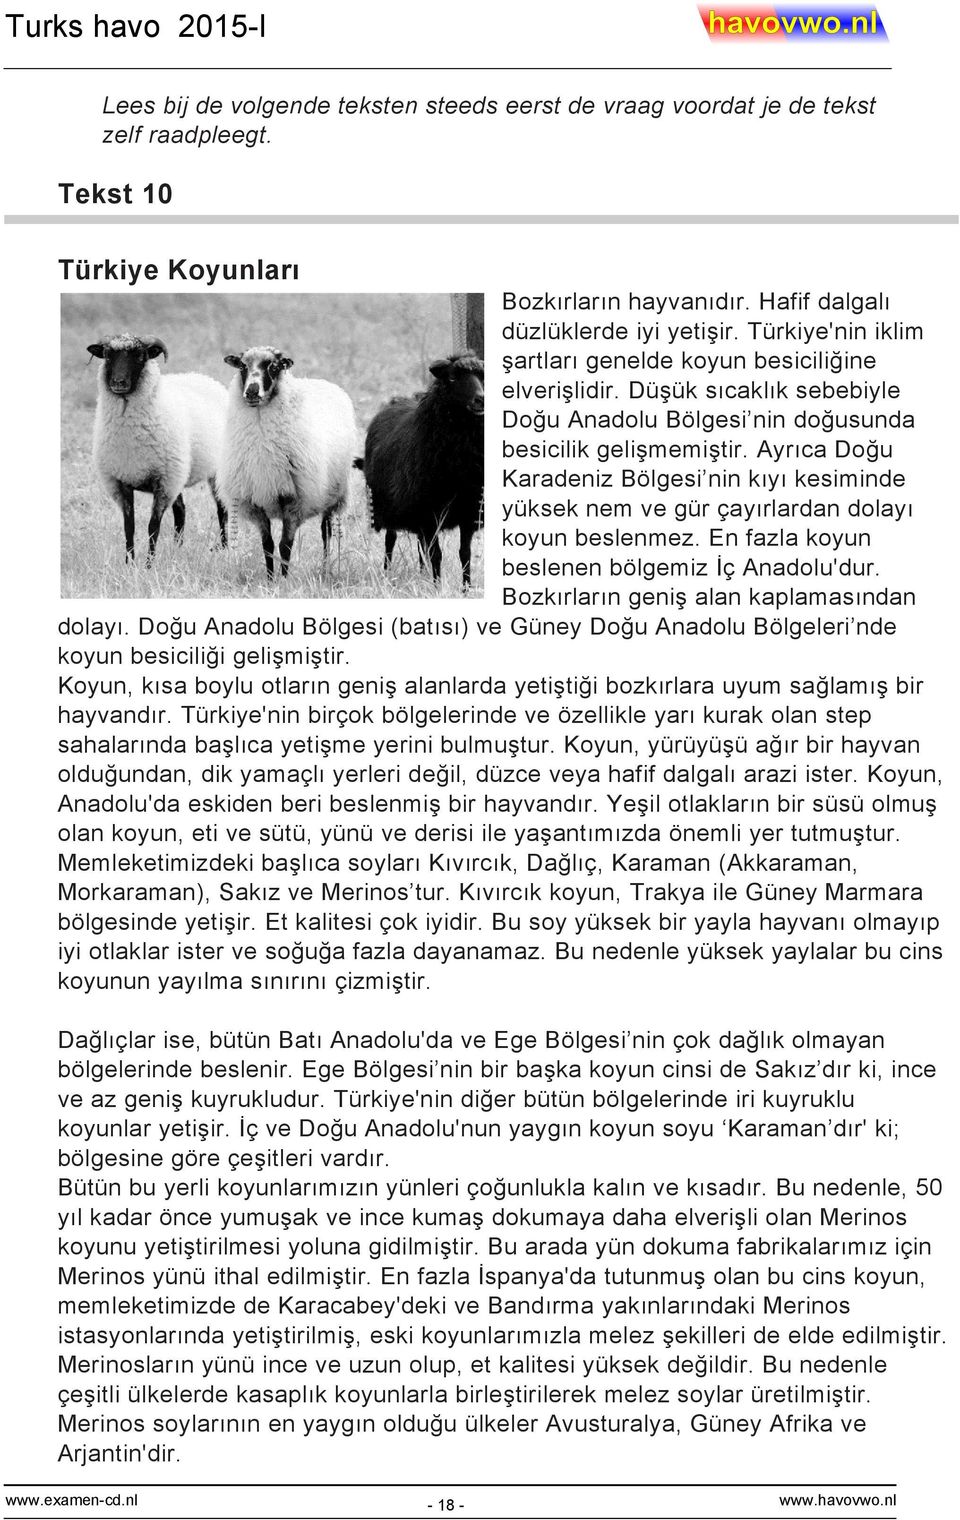 Ayrıca Doğu Karadeniz Bölgesi nin kıyı kesiminde yüksek nem ve gür çayırlardan dolayı koyun beslenmez. En fazla koyun beslenen bölgemiz İç Anadolu'dur. Bozkırların geniş alan kaplamasından dolayı.